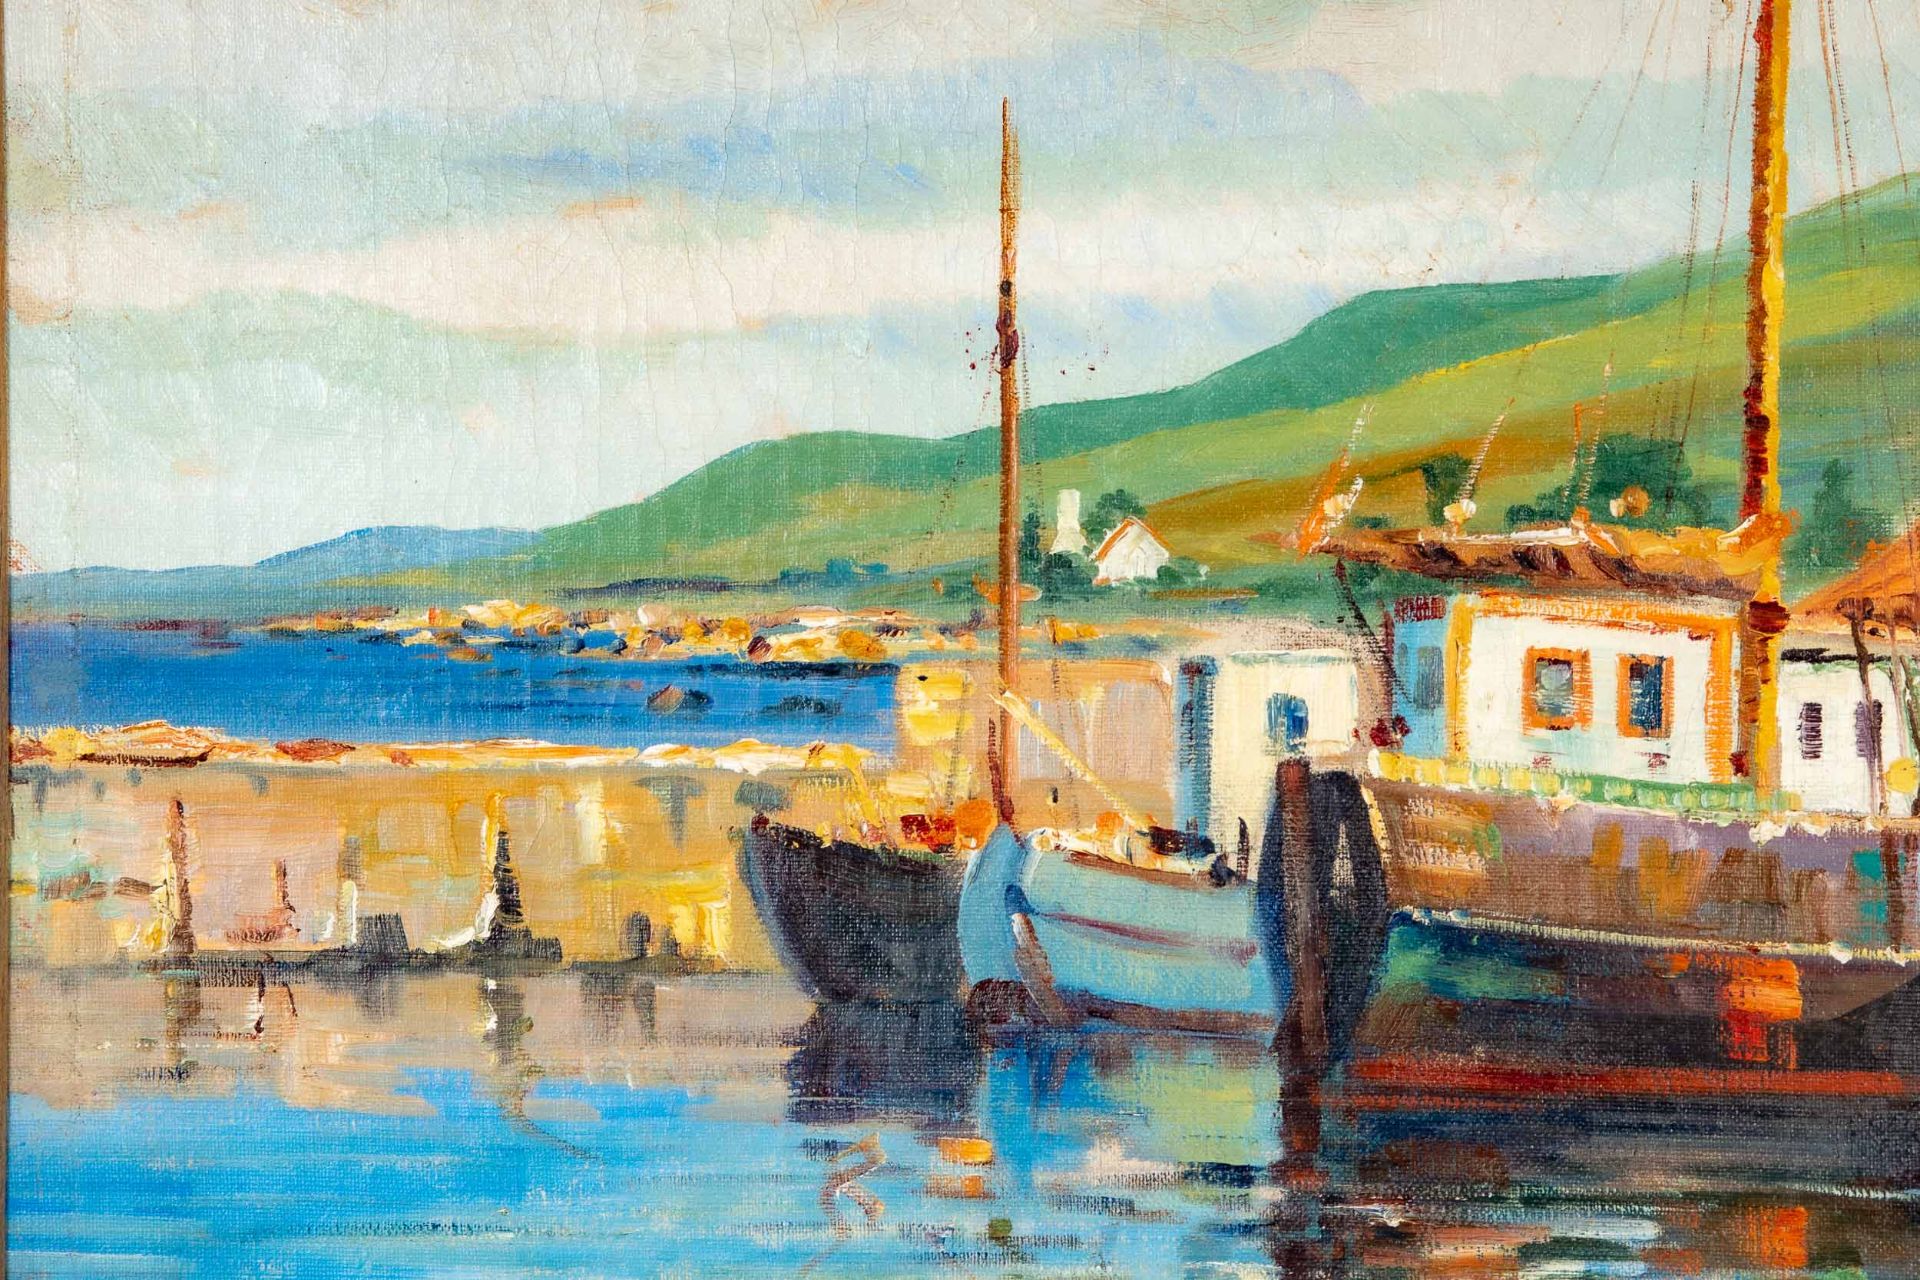 "Farbenfroher dänischer Hafen", großformatiges Gemälde, ca. 88 x 130 cm, unten links signiert: "Aru - Bild 6 aus 8